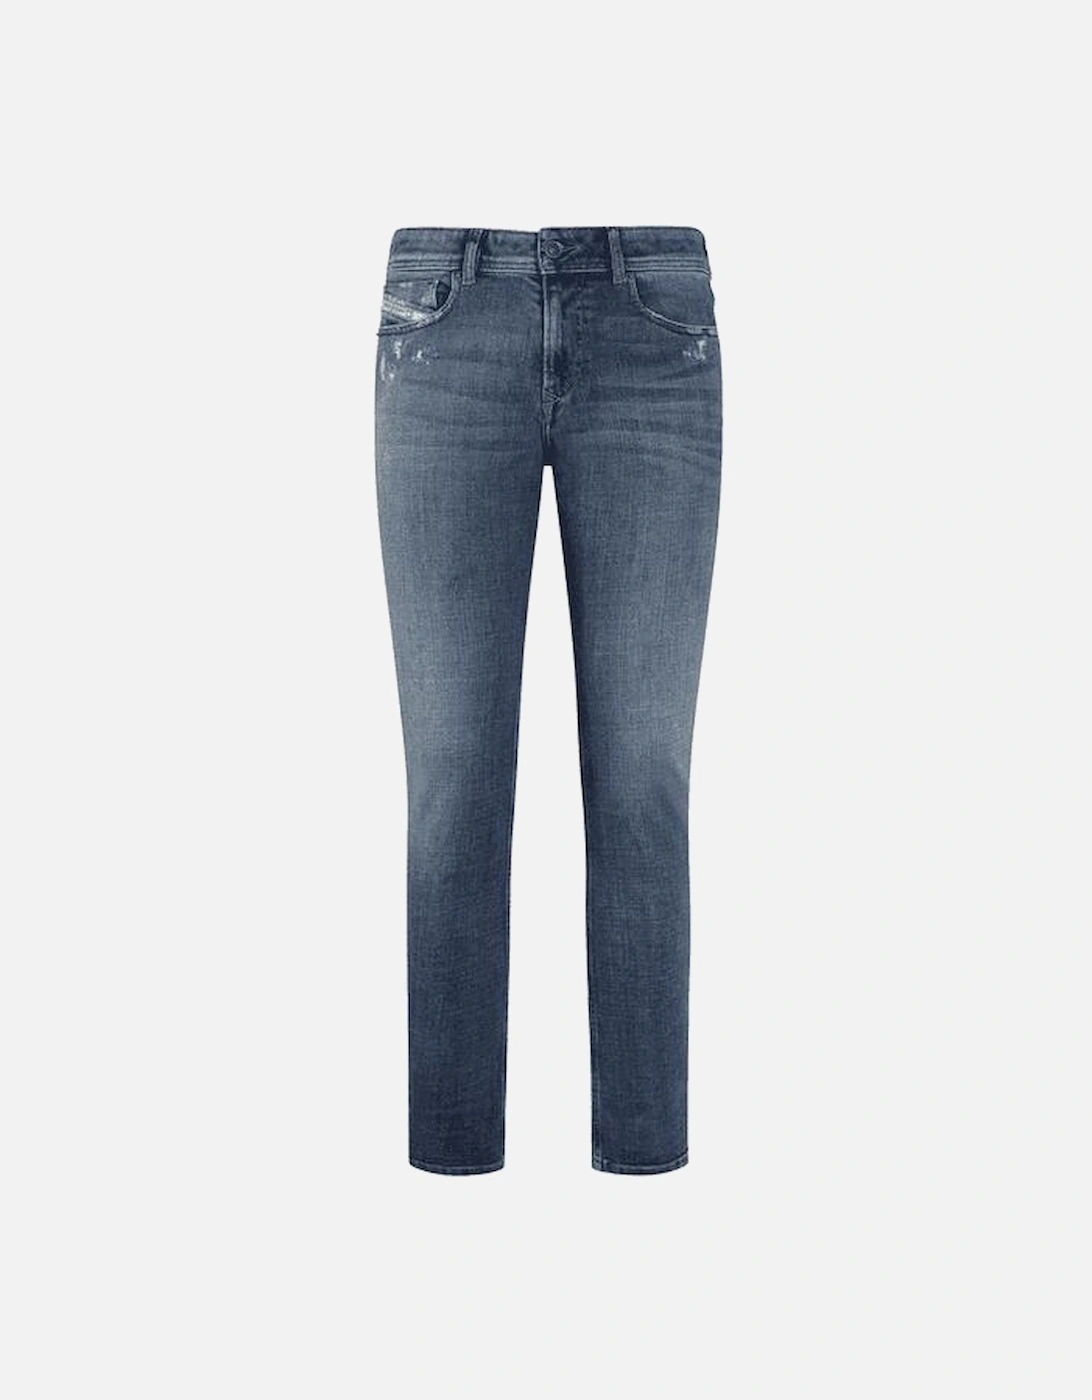 1979 Sleenker Skinny Fit Distressed Blue Jeans, 3 of 2